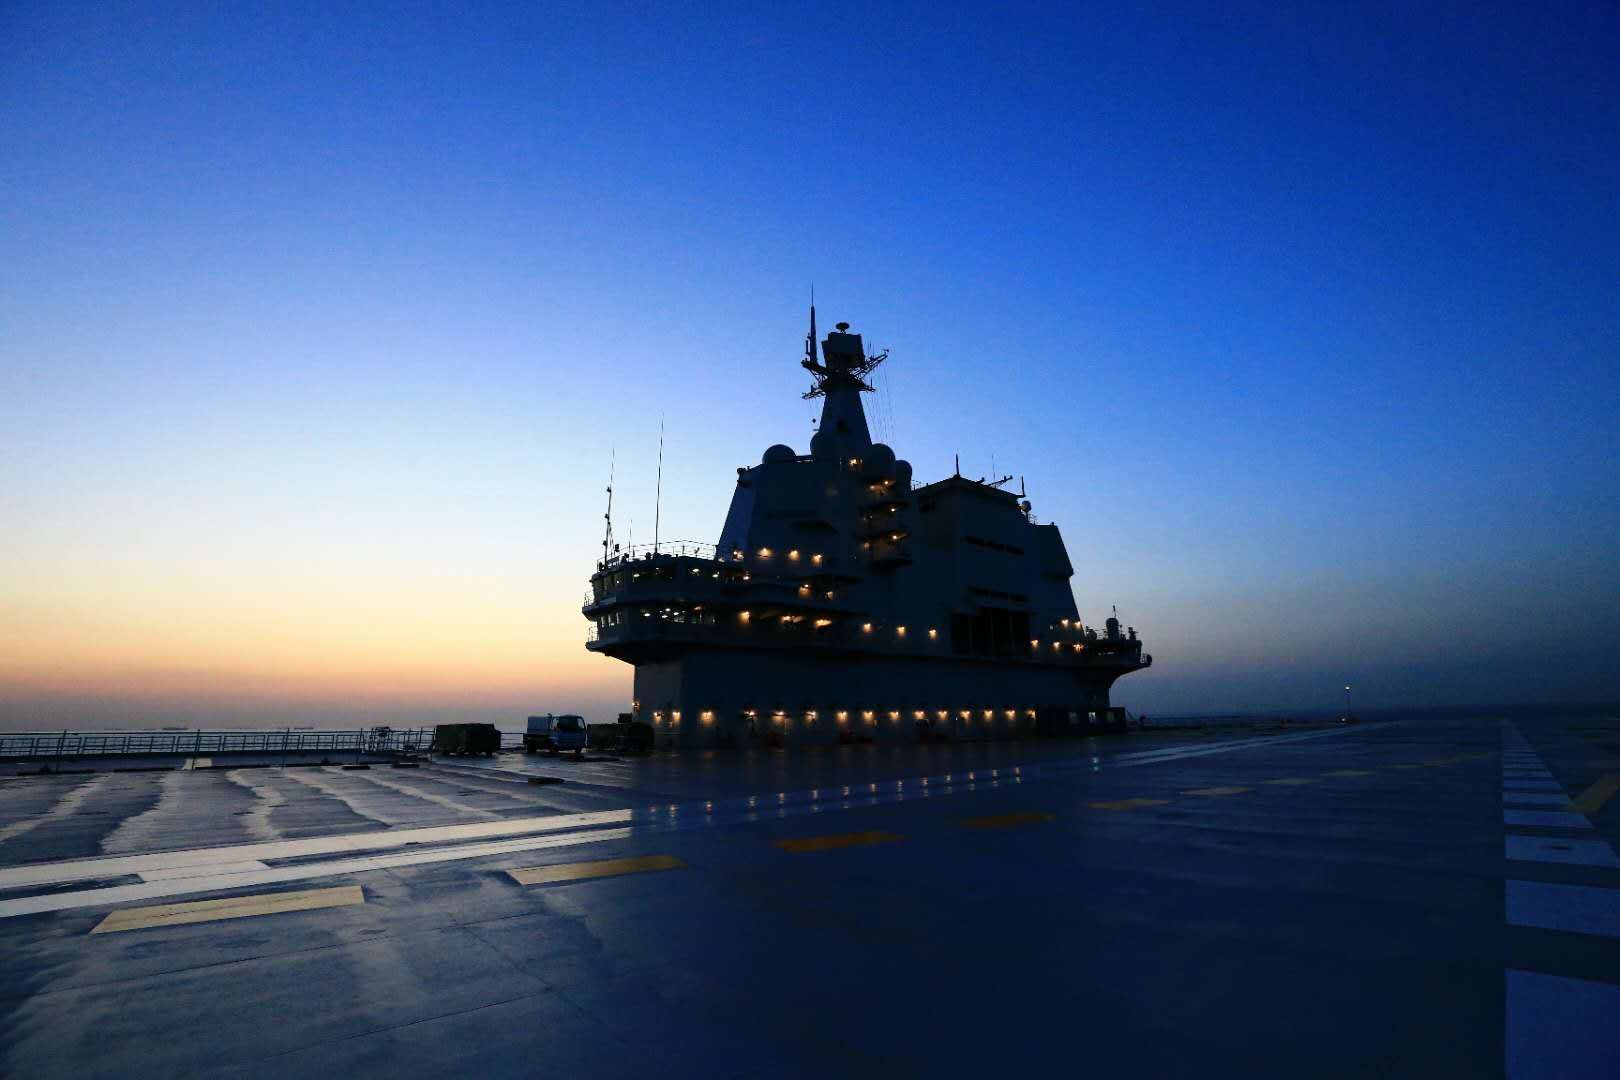 中国首艘国产航母“山东舰”发布舰徽、舰标等纪念品 - 2020年1月7日, 俄罗斯卫星通讯社